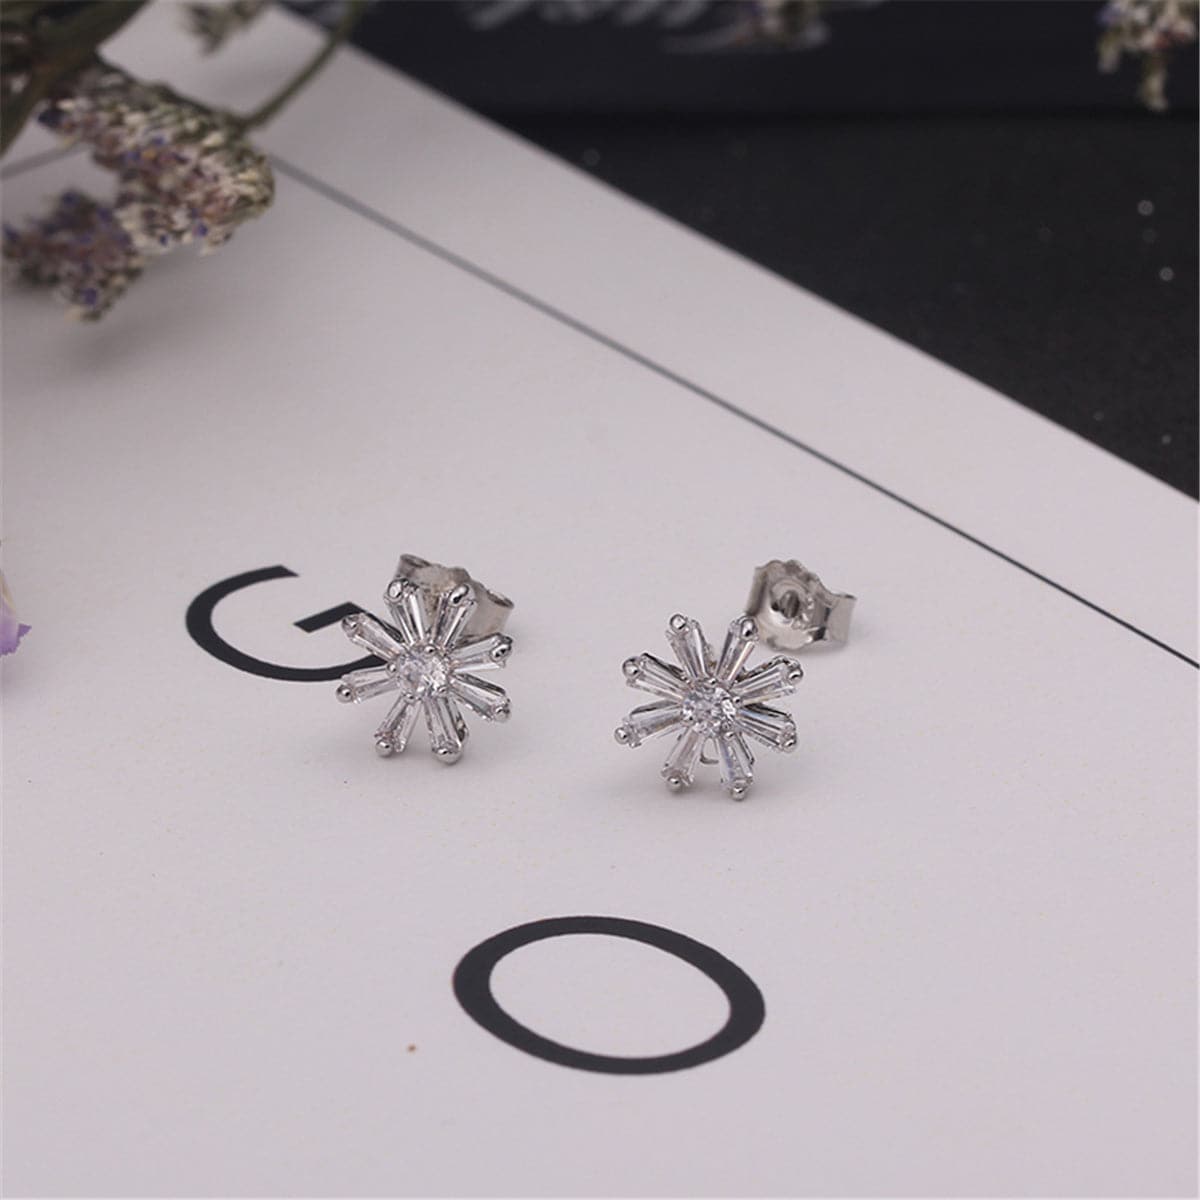 Crystal & Sterling Silver Snowflake Stud Earrings - streetregion